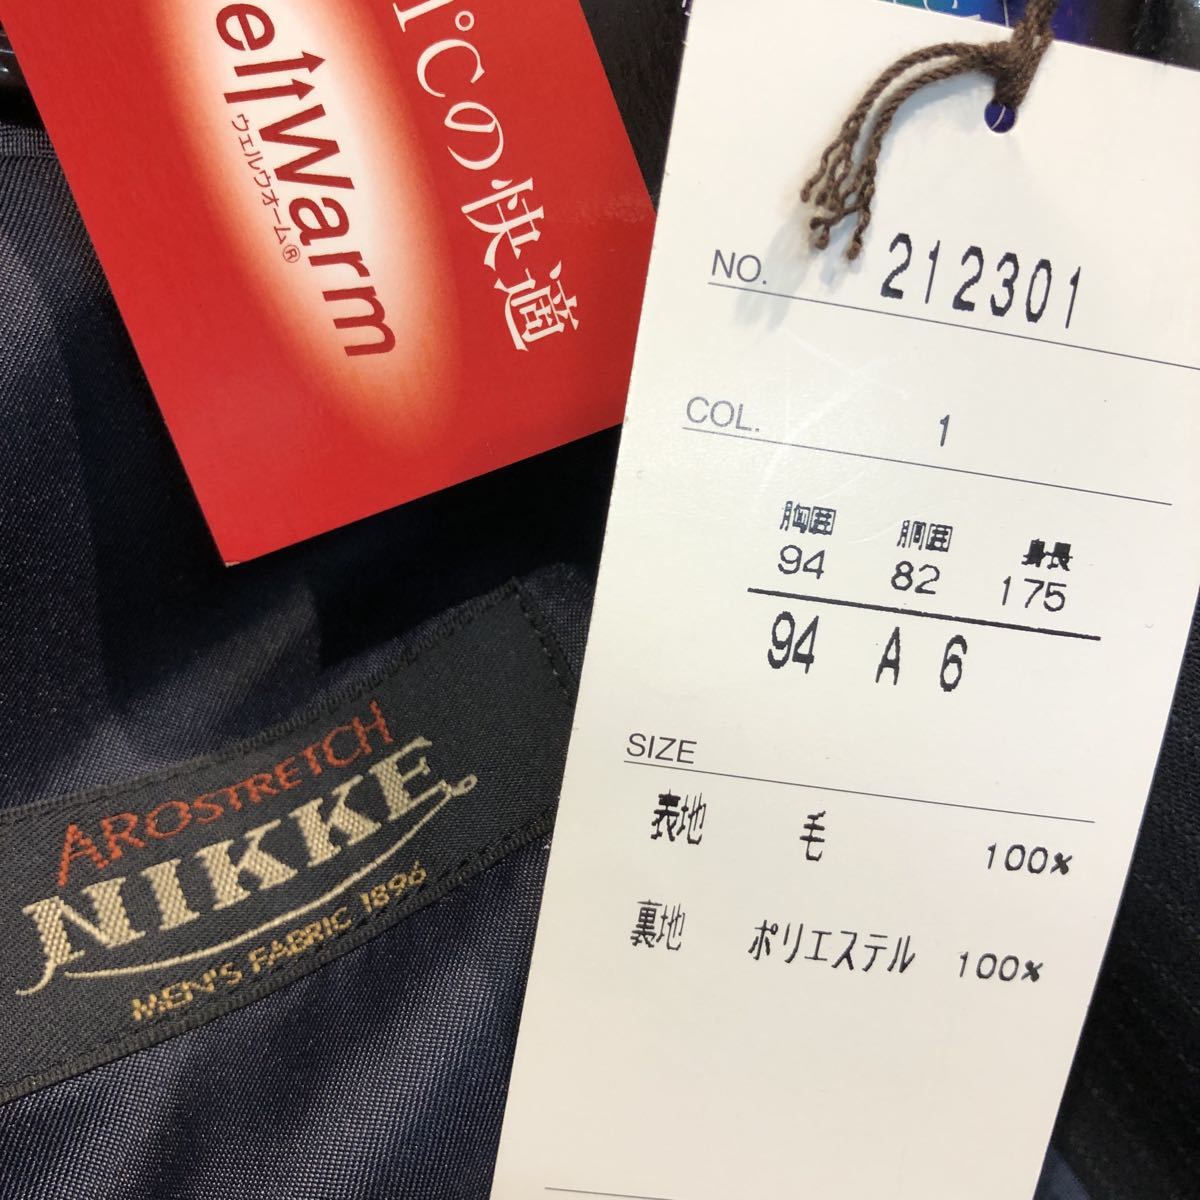 新品【サイズA6 L☆高級NIKKE】2Bシングルスーツ ネイビー系ストライプ 